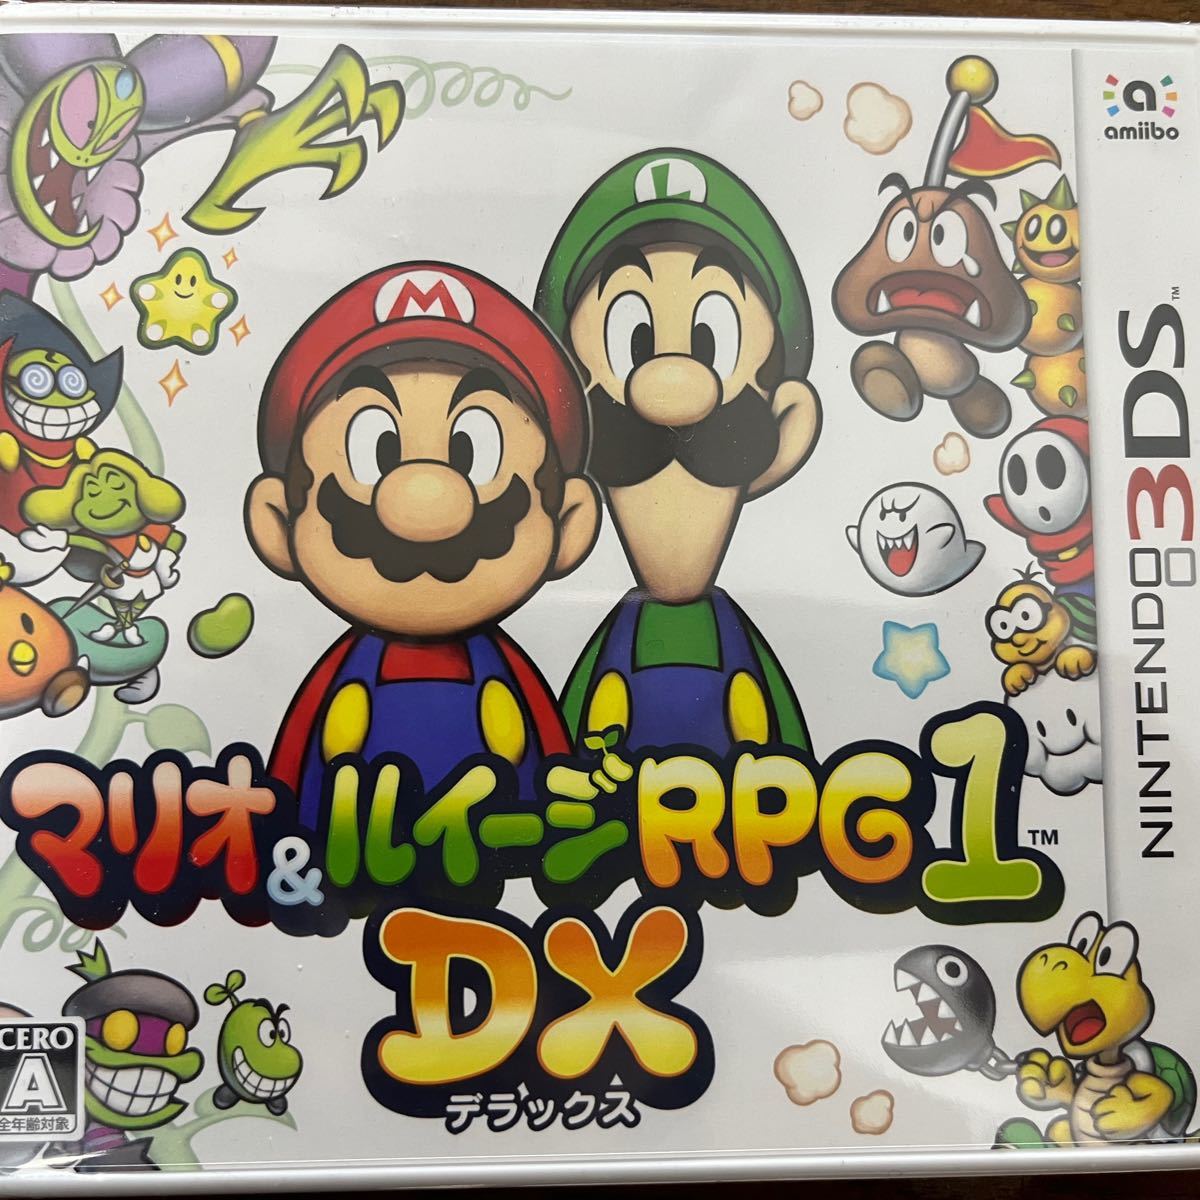 マリオ&ルイージRPG1 DX 3DSソフト